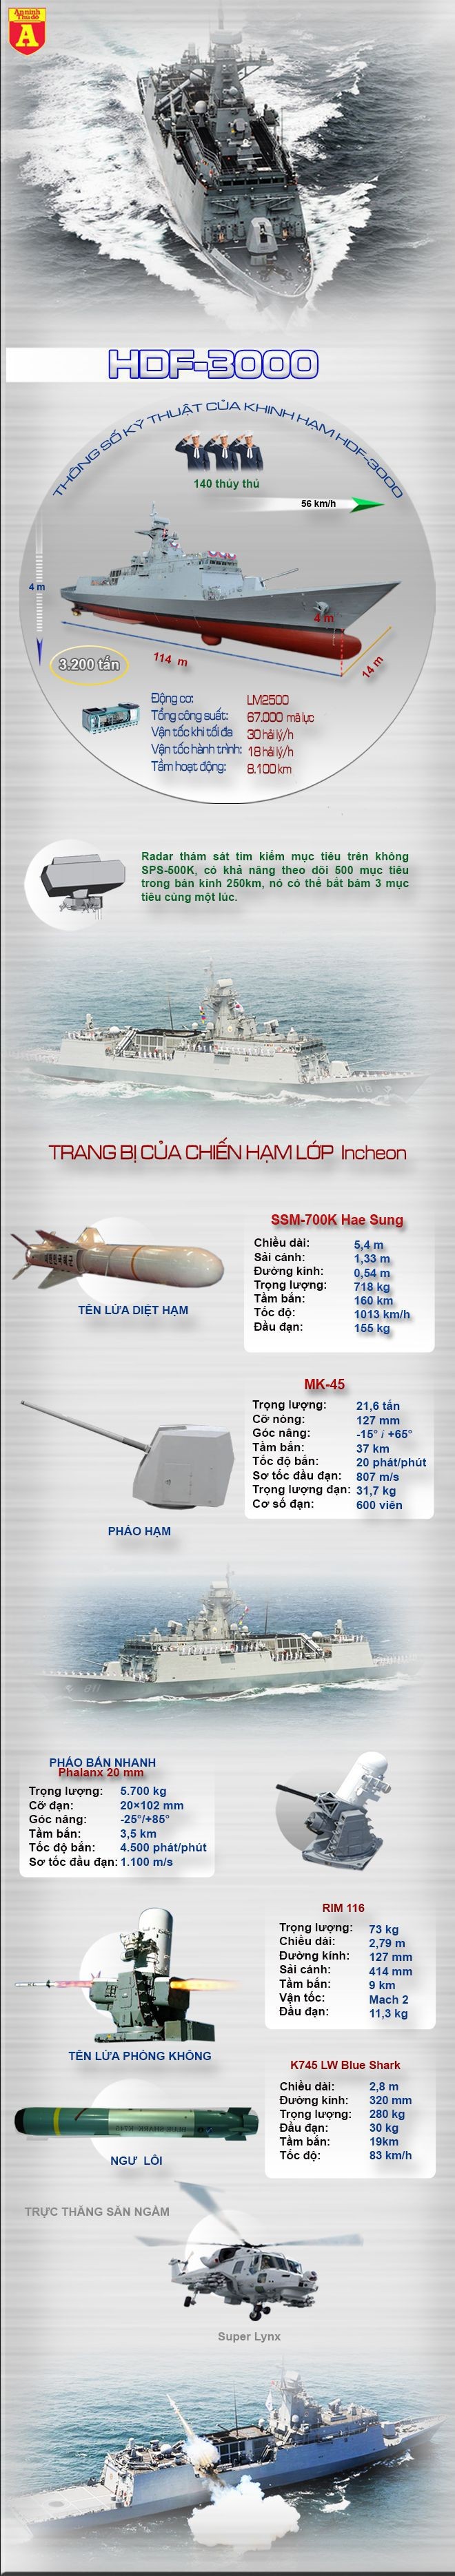 [Infographic] Khinh hạm HDF-3000 - "Mãnh thú" trên Biển Đông ảnh 2